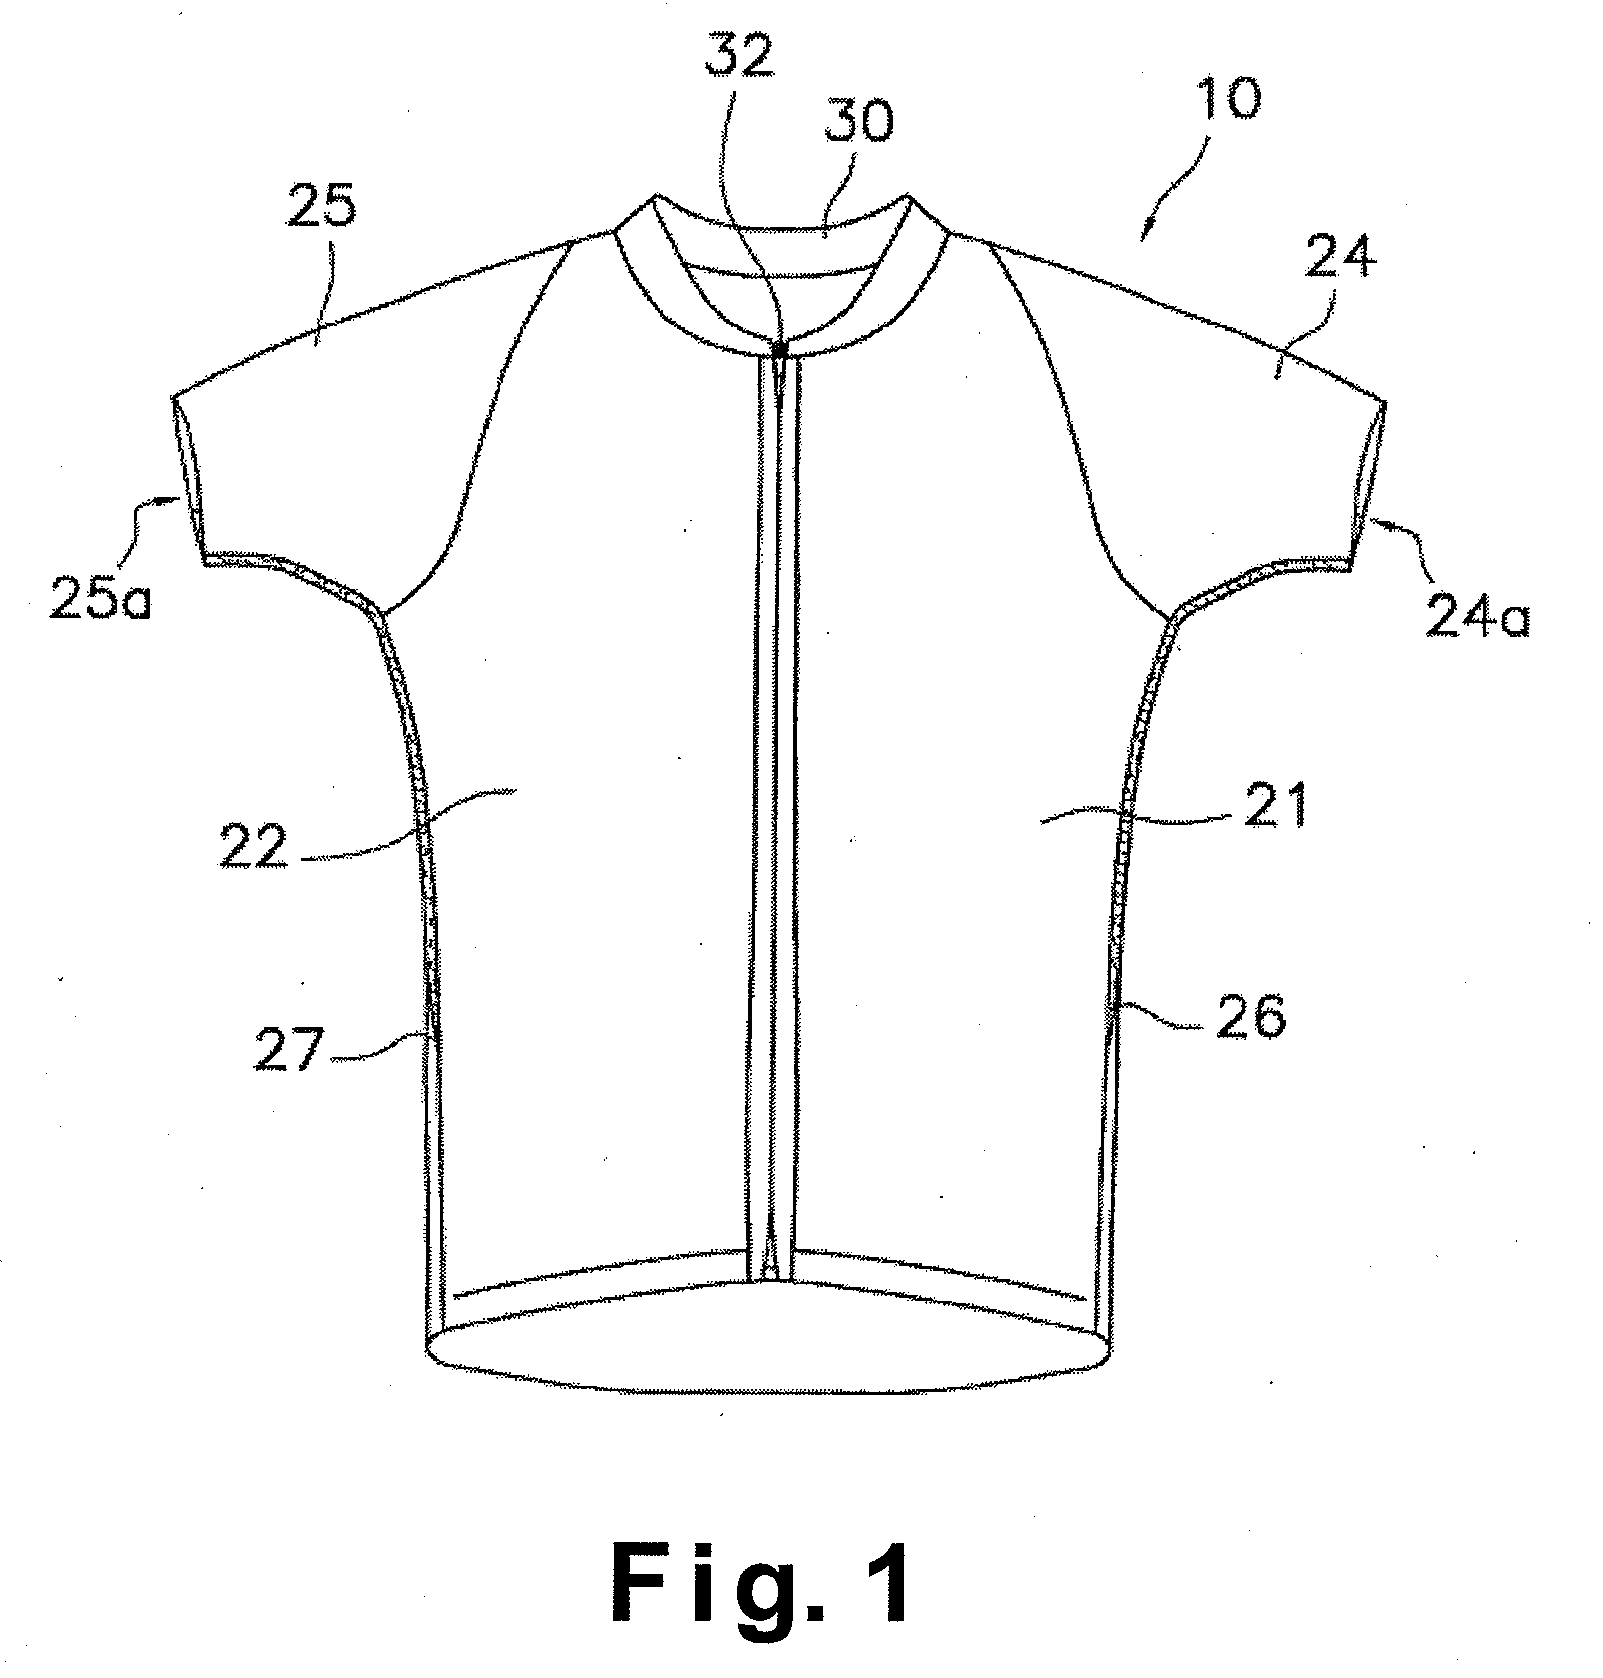 Cycling garment